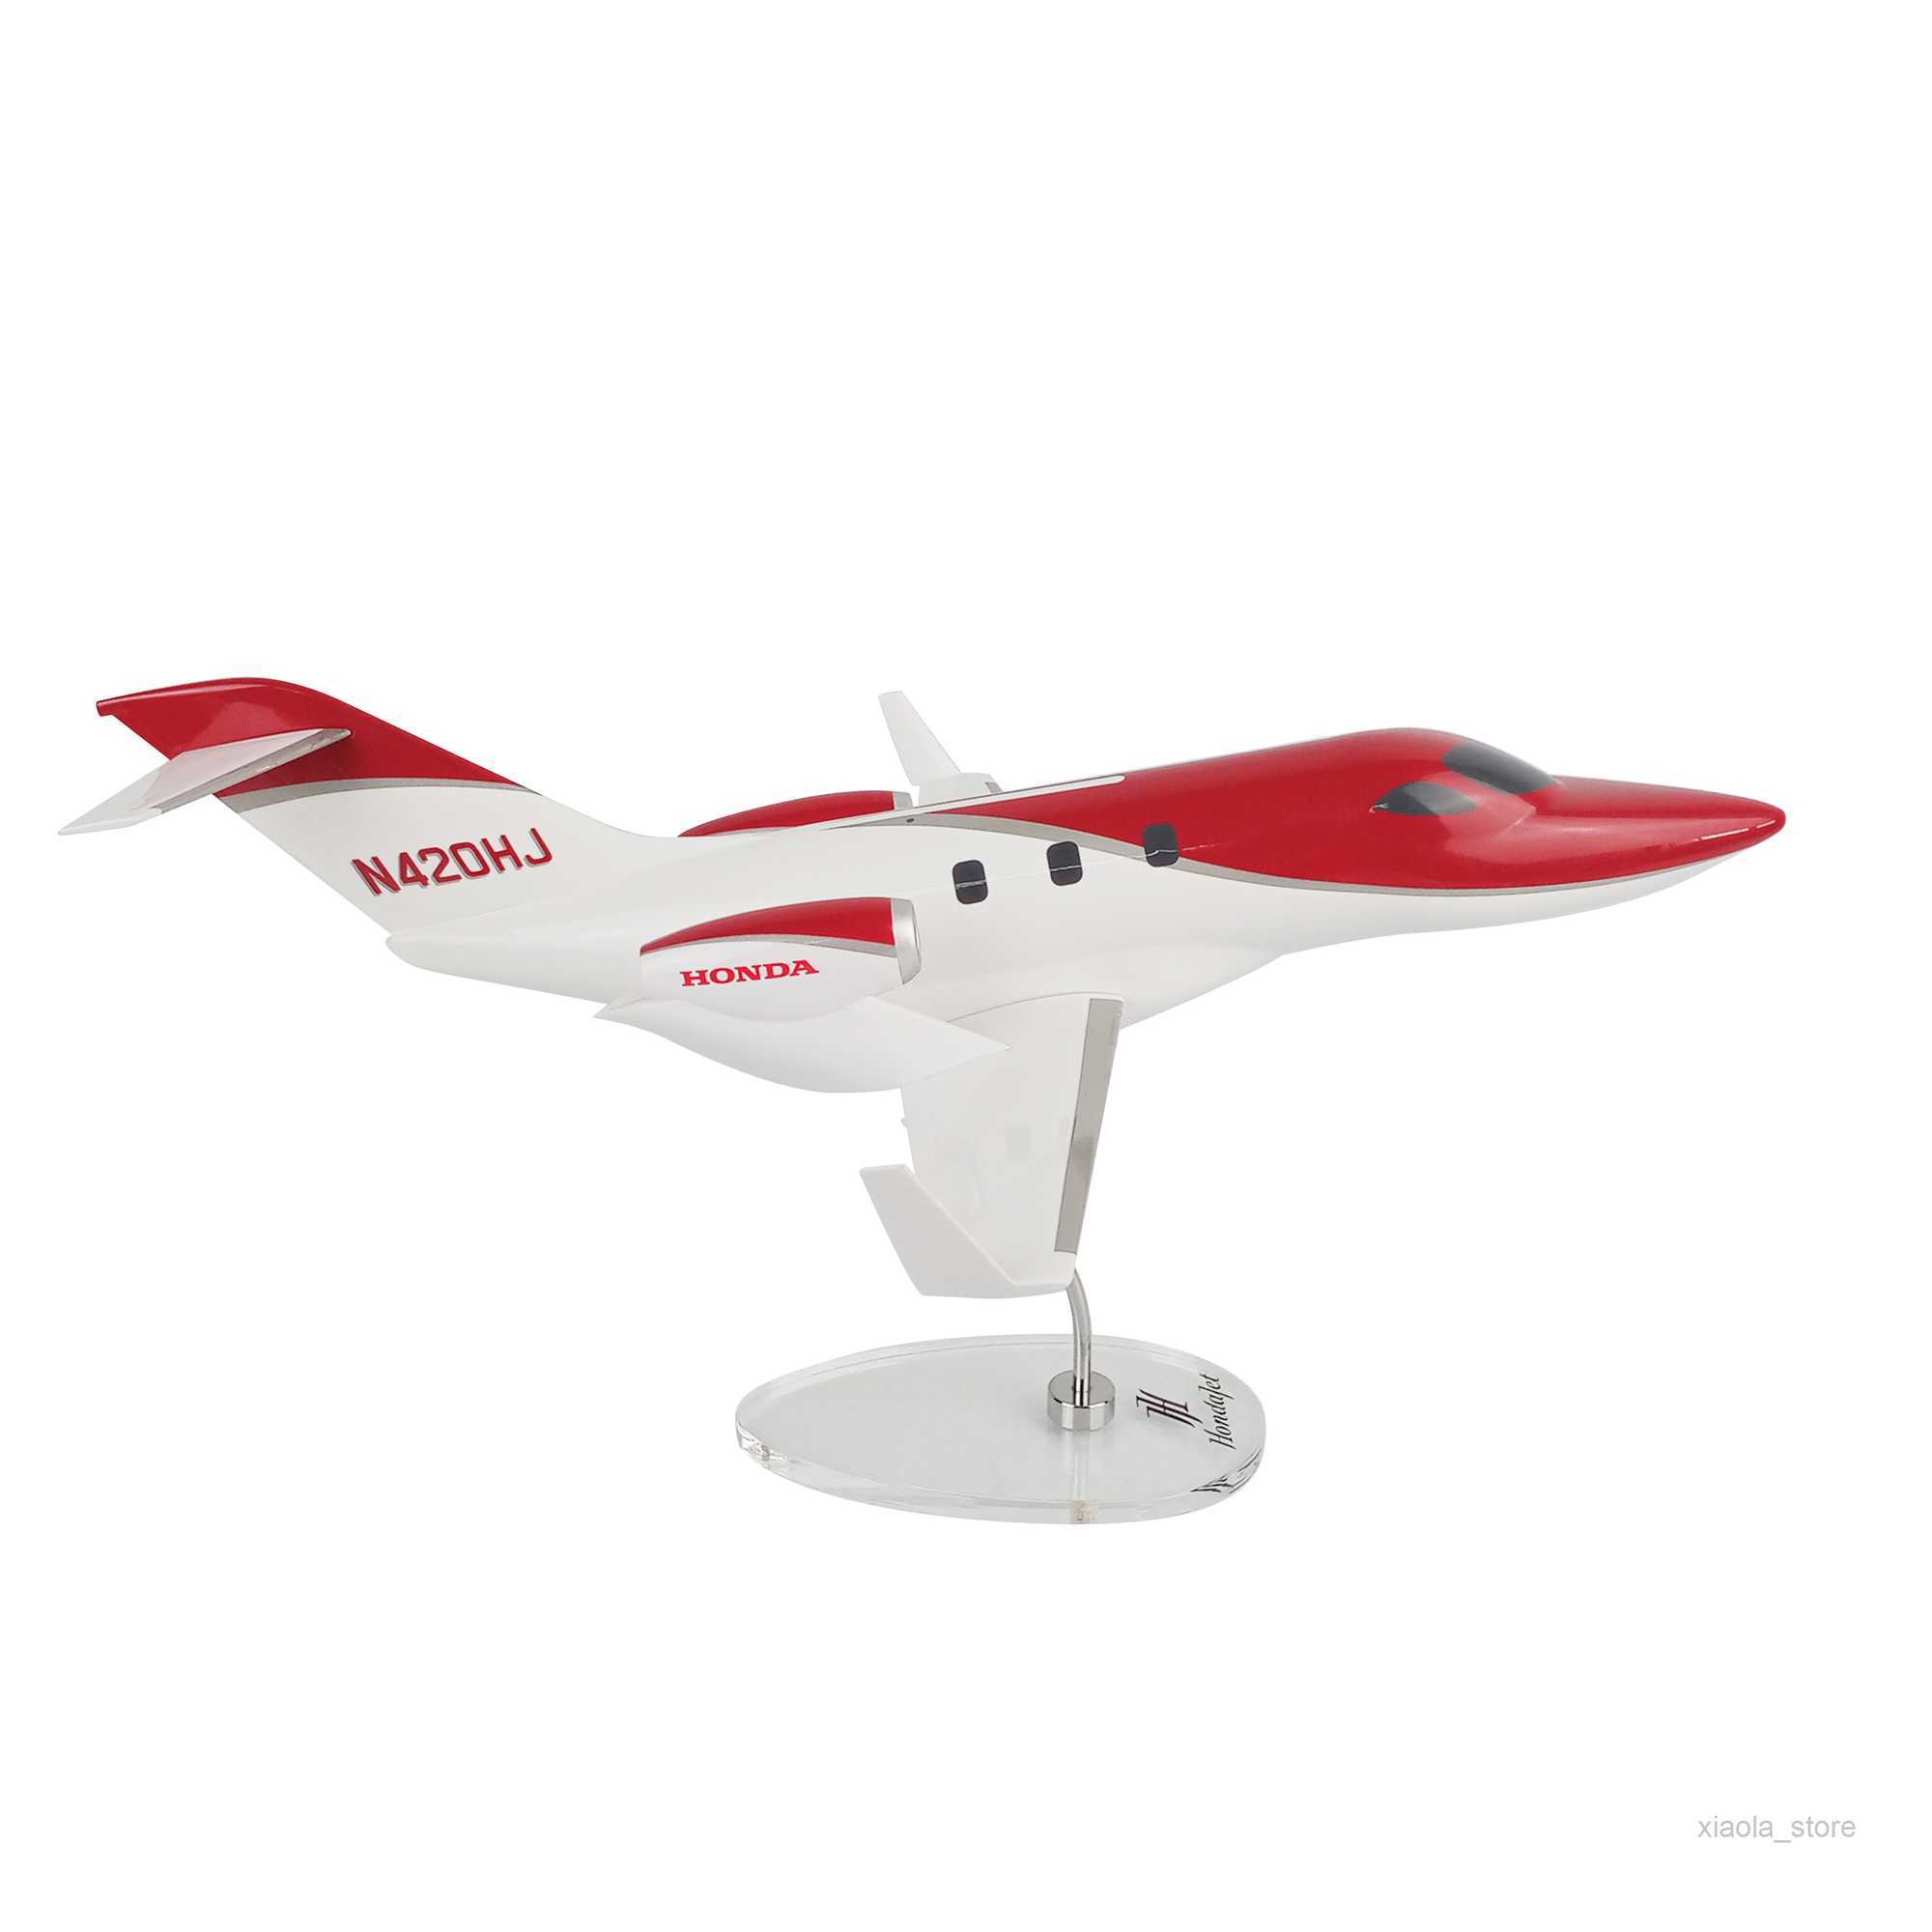 Modelo de avión HondaJet Red 1/32, escala, avión comercial, colección de exhibición, modelo de aviónHKD230701